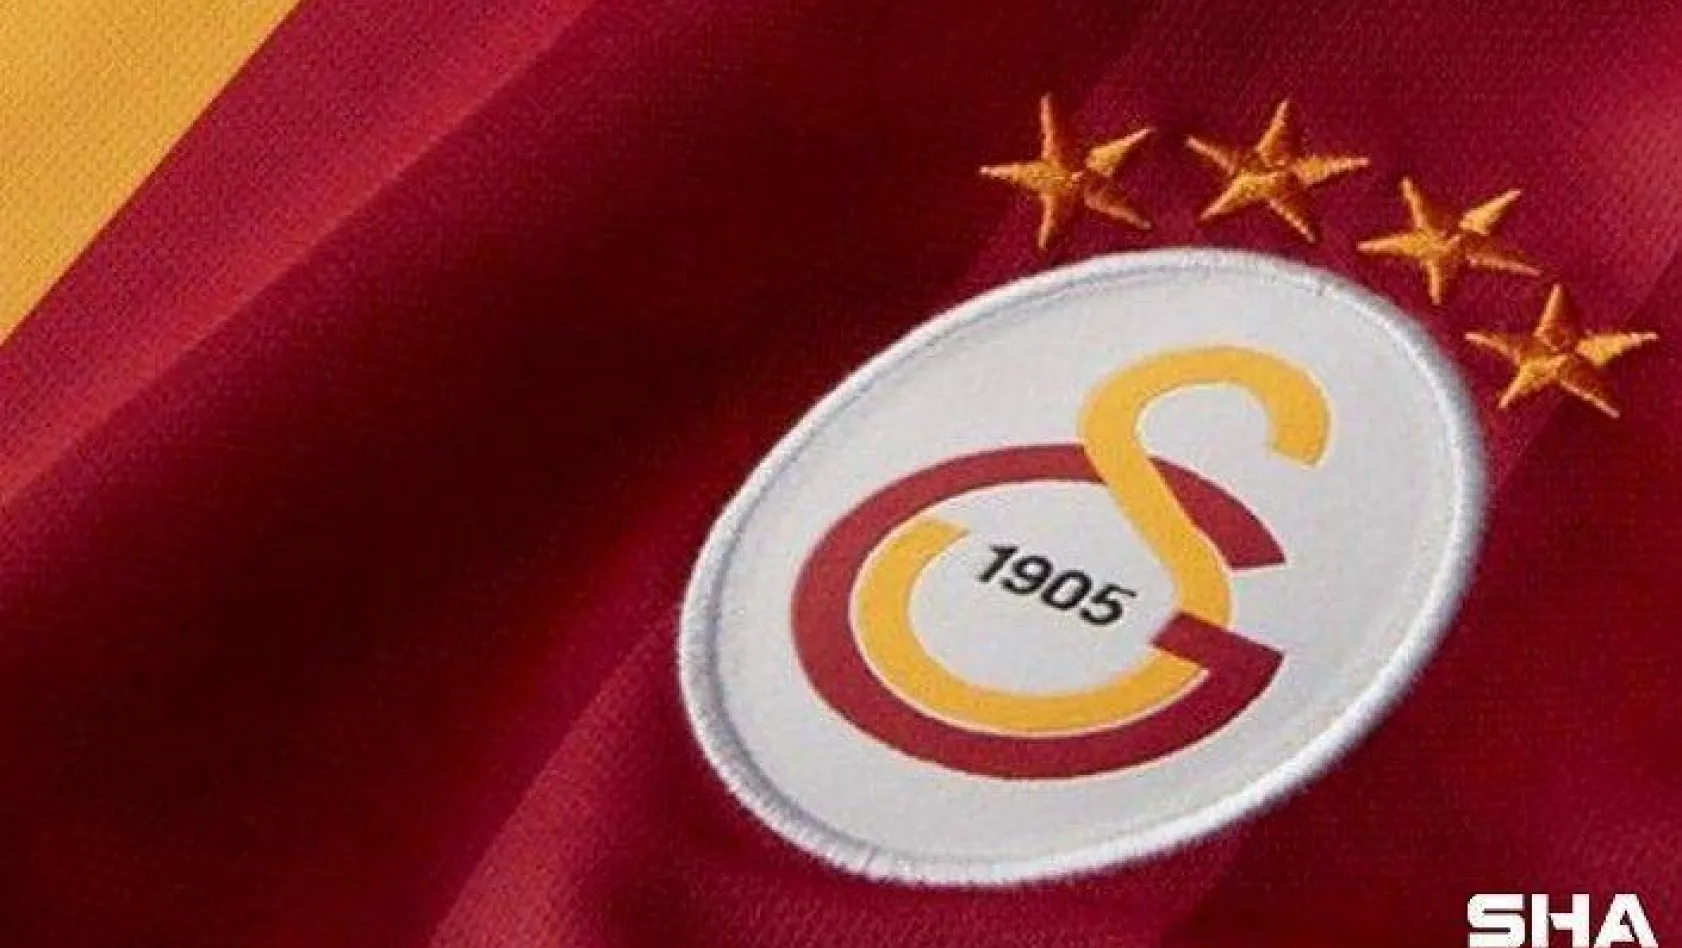 Galatasaray'dan korona virüs açıklaması